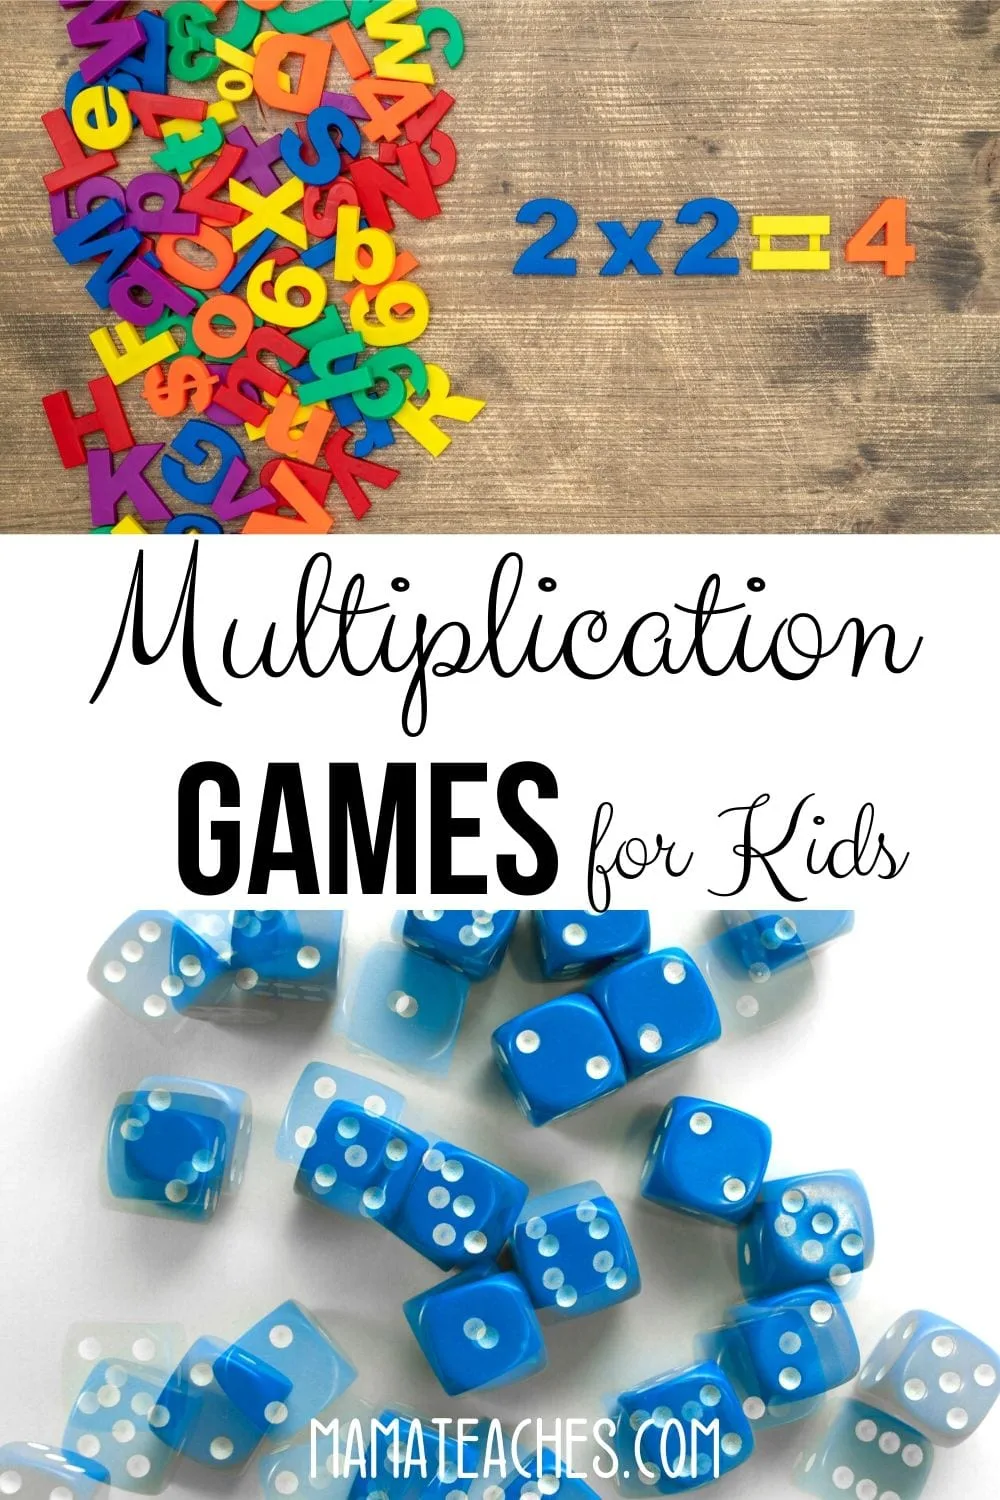 Multiplication Games for Kids to Help Stop Summer Slide